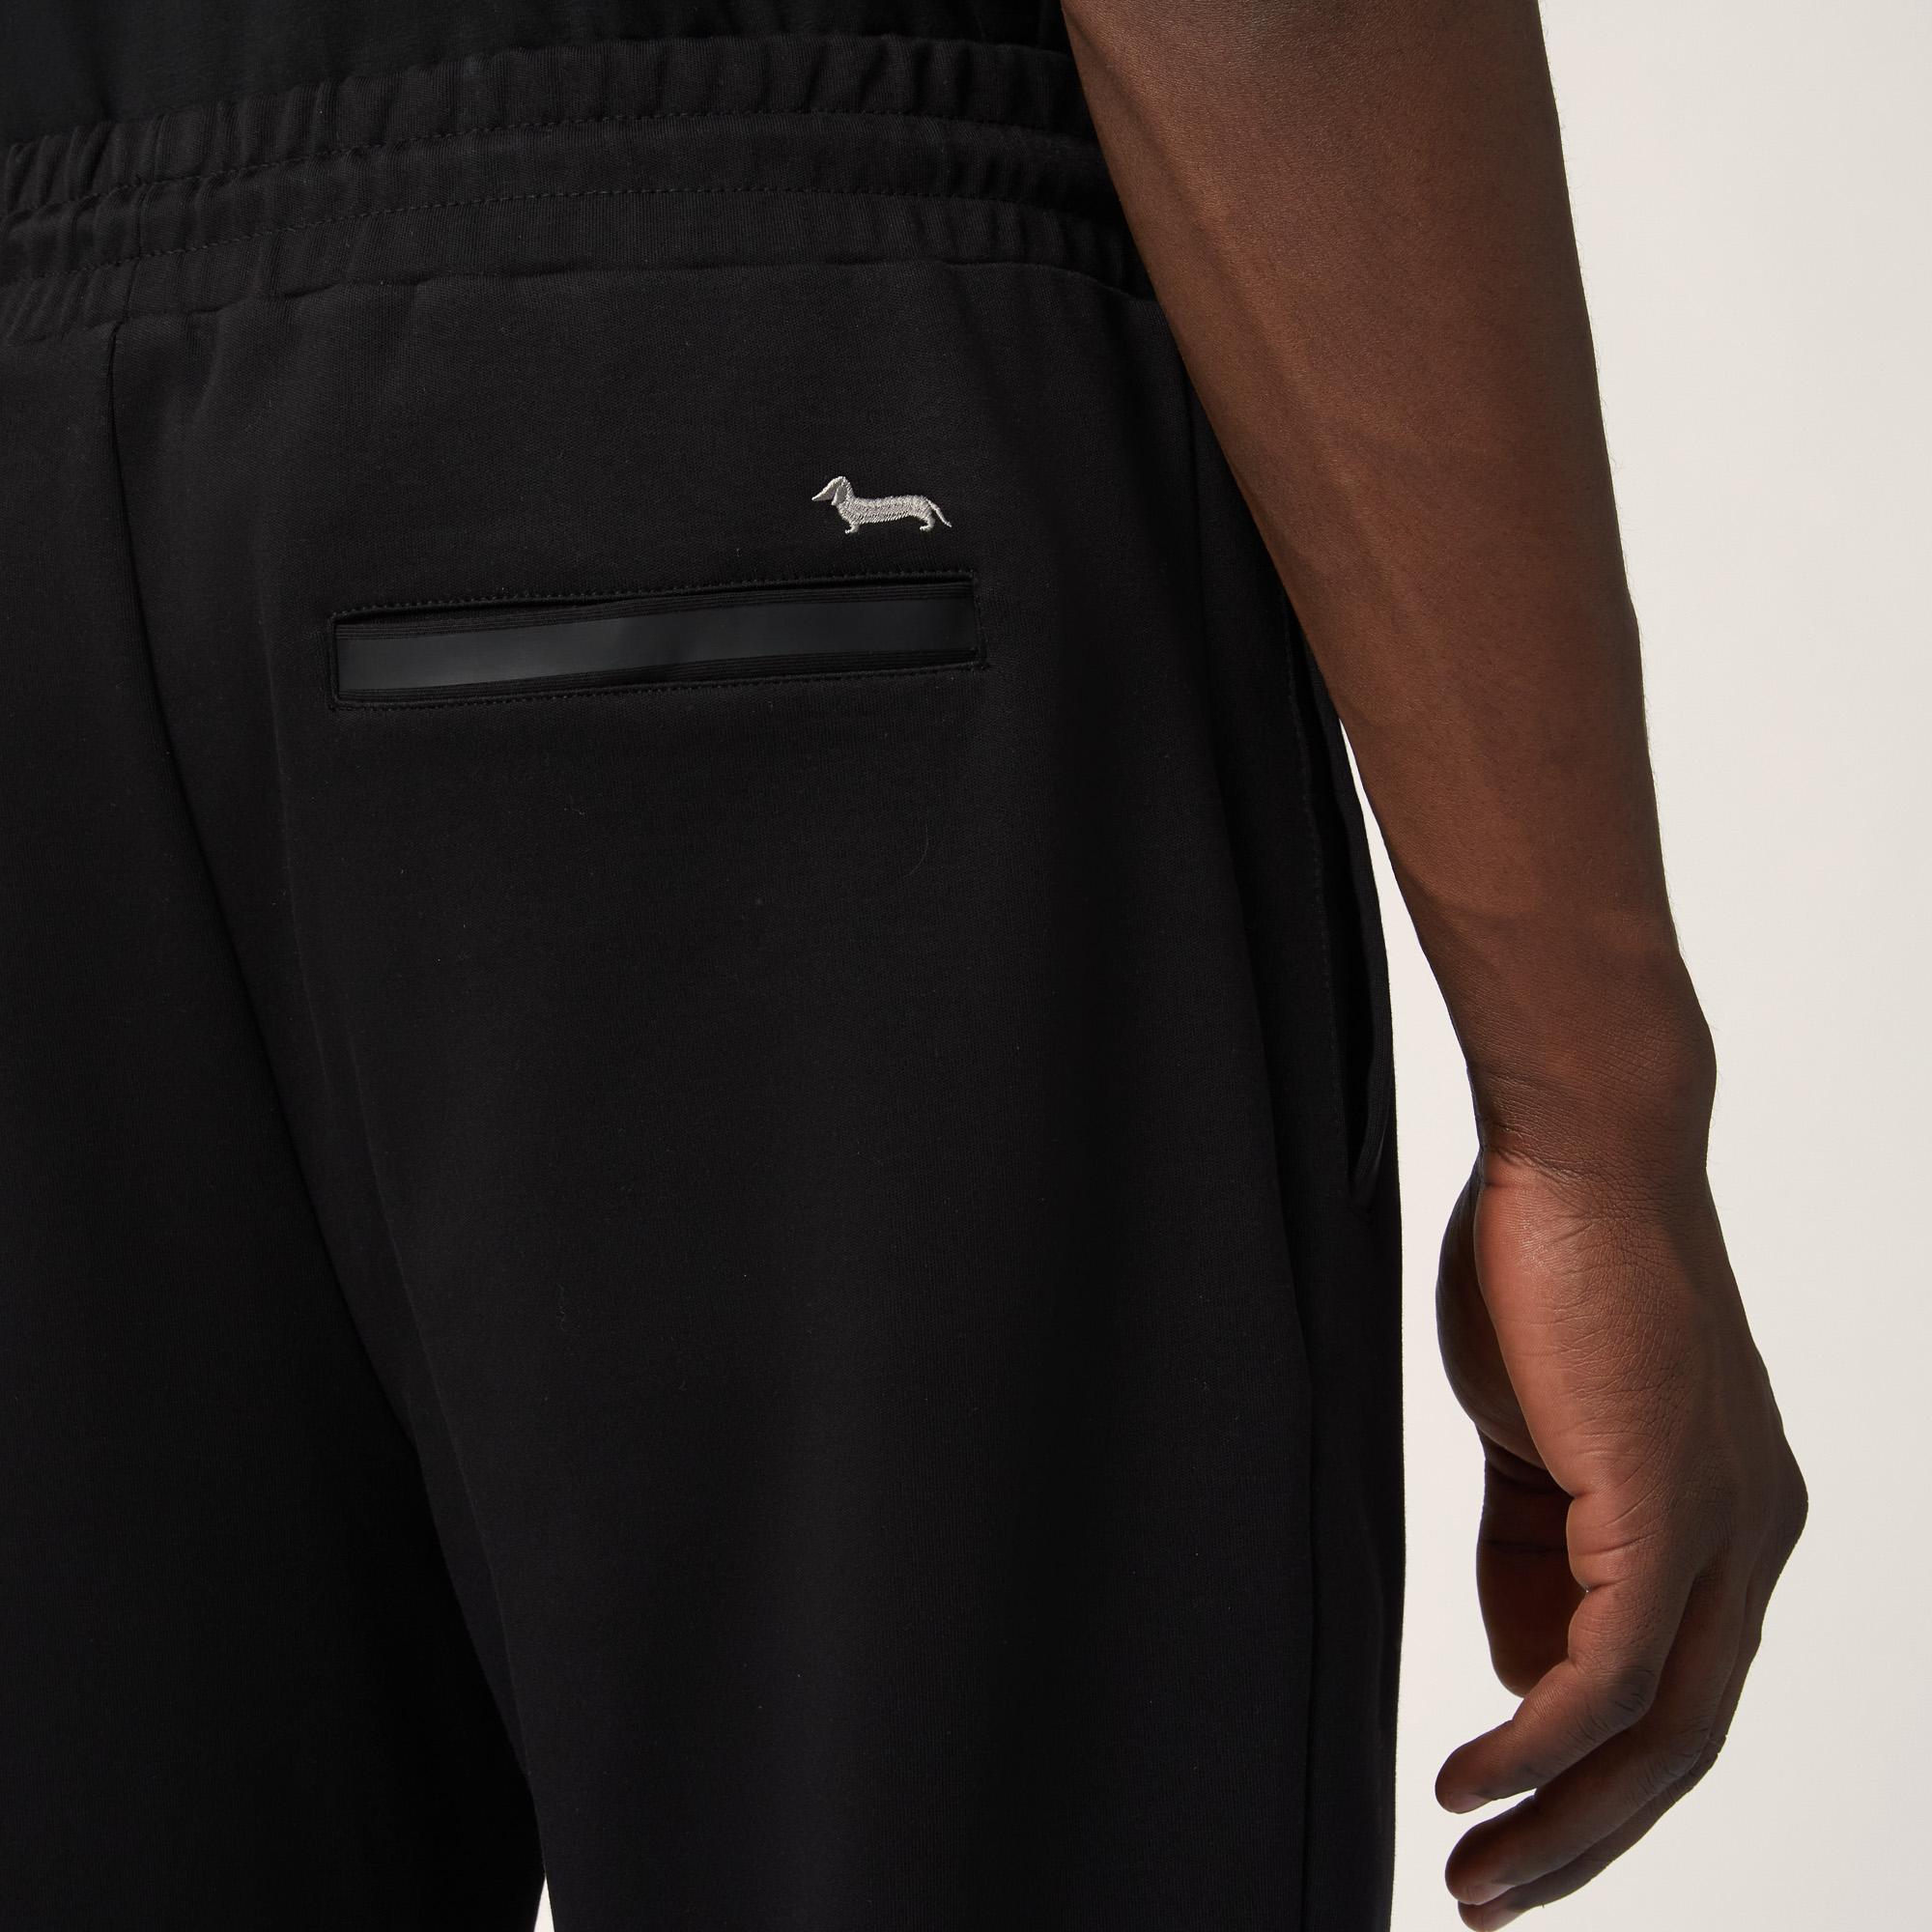 Cotton Pants with Back Pocket, Black, large image number 2